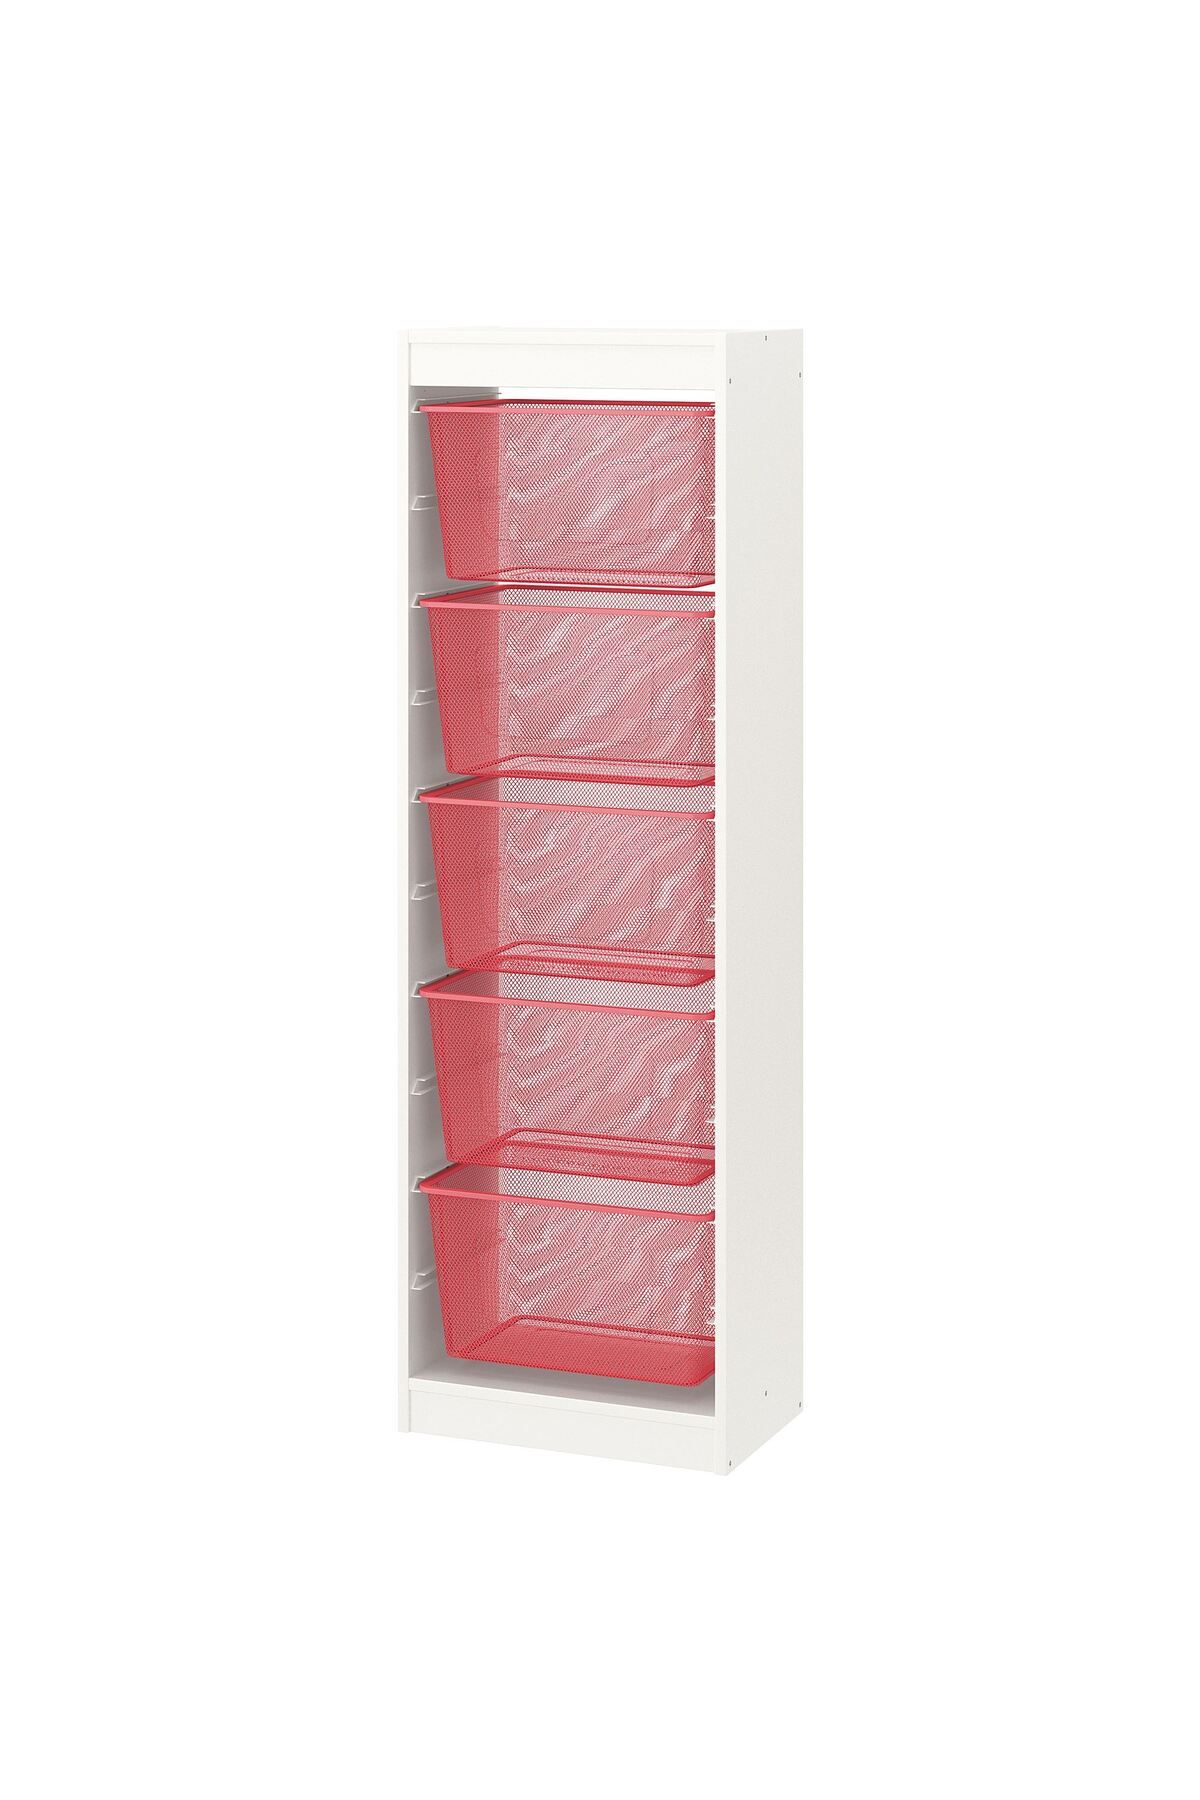 IKEA saklama ünitesi, beyaz-açık kırmızı, 46x30x145 cm